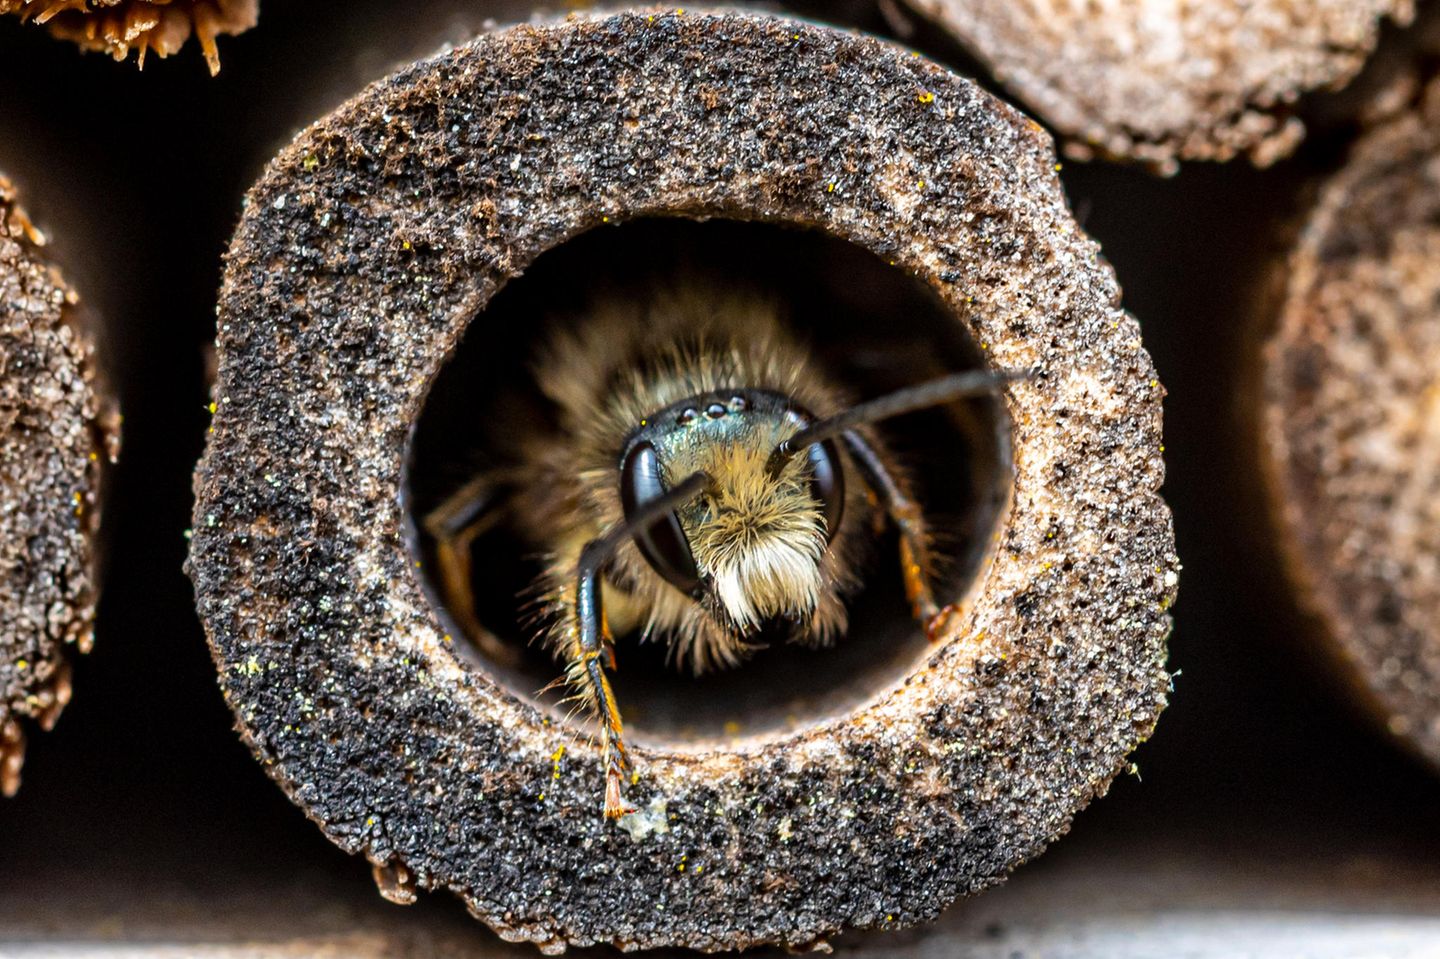 Die meisten Wildbienen der mehr als 560 in Deutschland vorkommenden Arten leben nicht in Staaten, wie die Honigbiene – sondern machen ihr eigenes Ding. Die Weibchen der sogenannten Solitär- oder Einsiedlerbienen bauen ihre Nester allein und versorgen die Brutzelle ohne die Hilfe von Artgenossen.